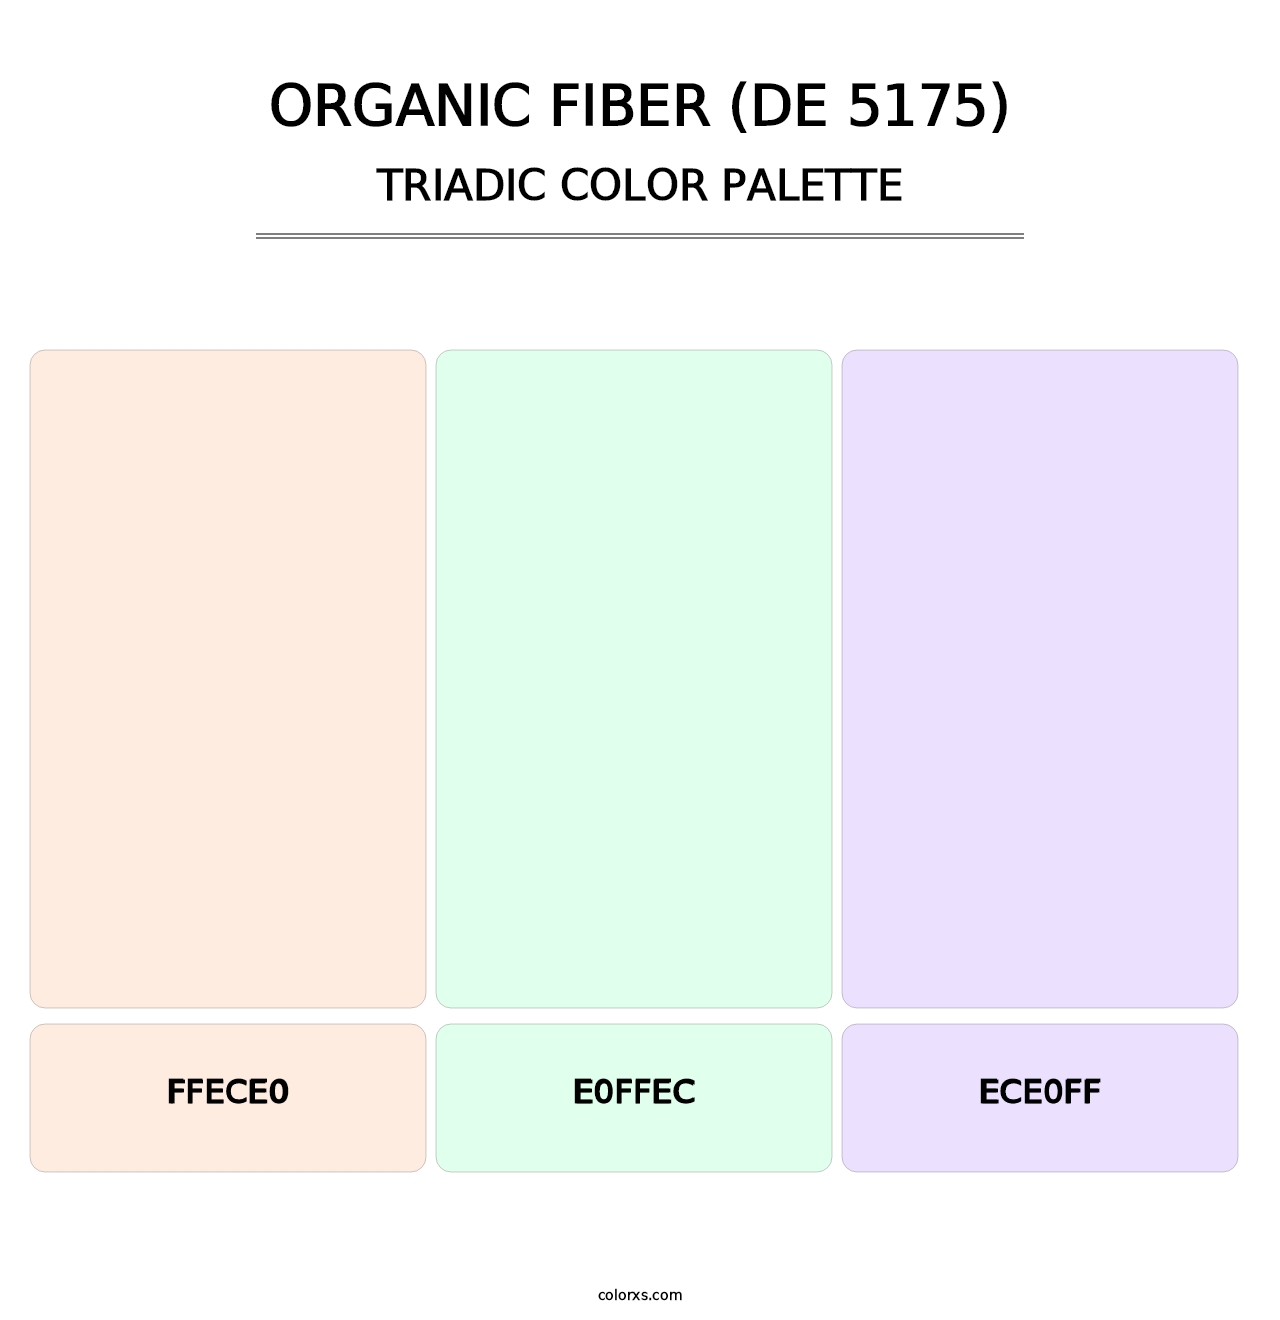 Organic Fiber (DE 5175) - Triadic Color Palette